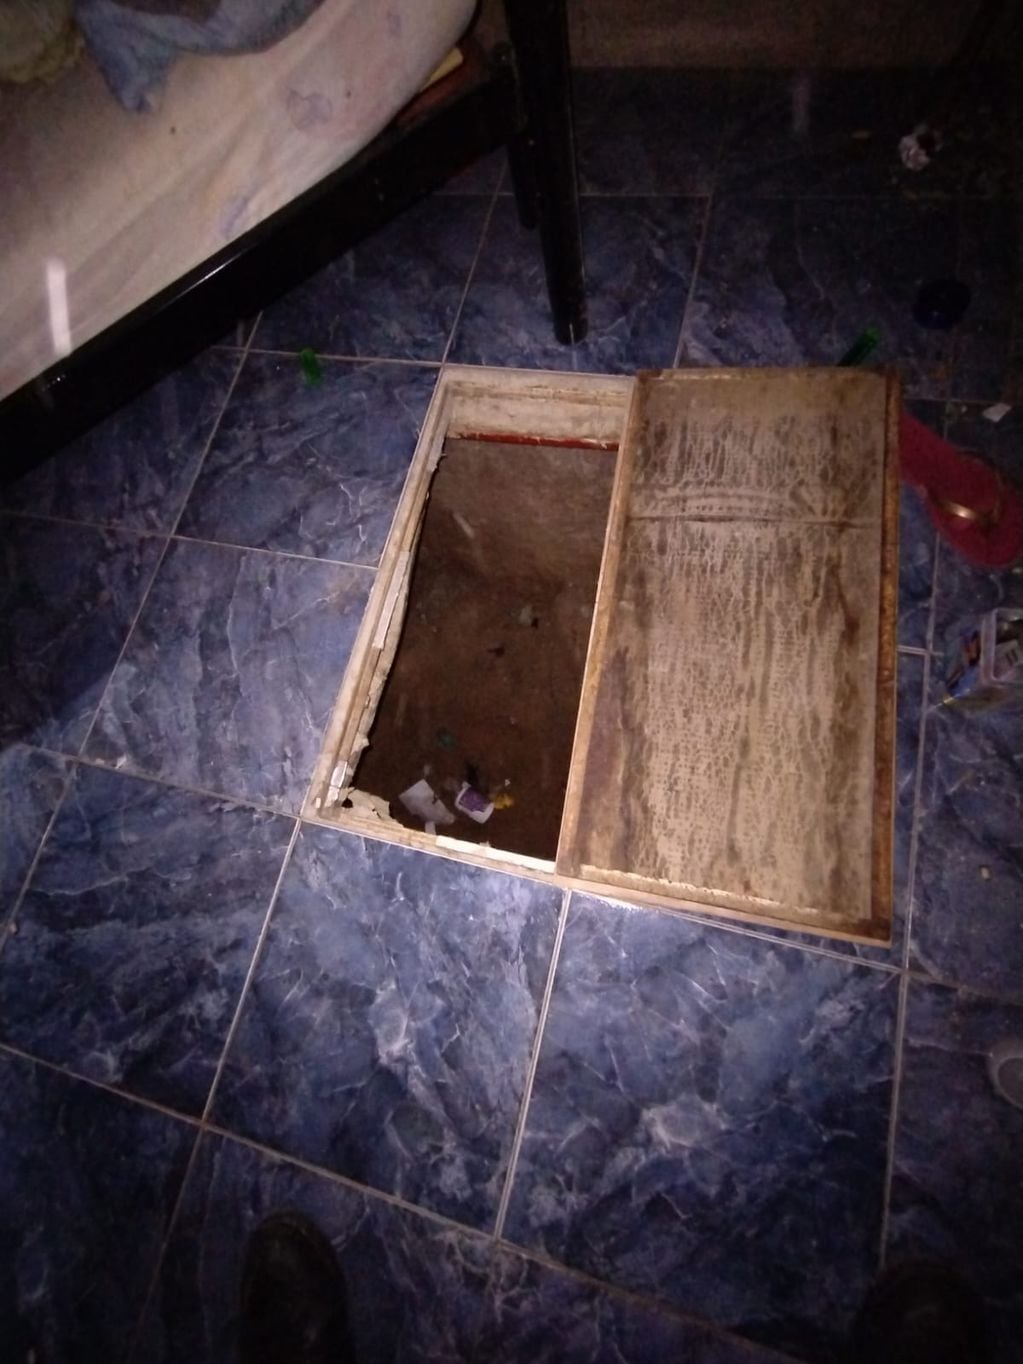 Una mujer fue encerrada en un pozo-celda en su vivienda de villa La Toma, en Córdoba Capital. (Javier Ferreyra)